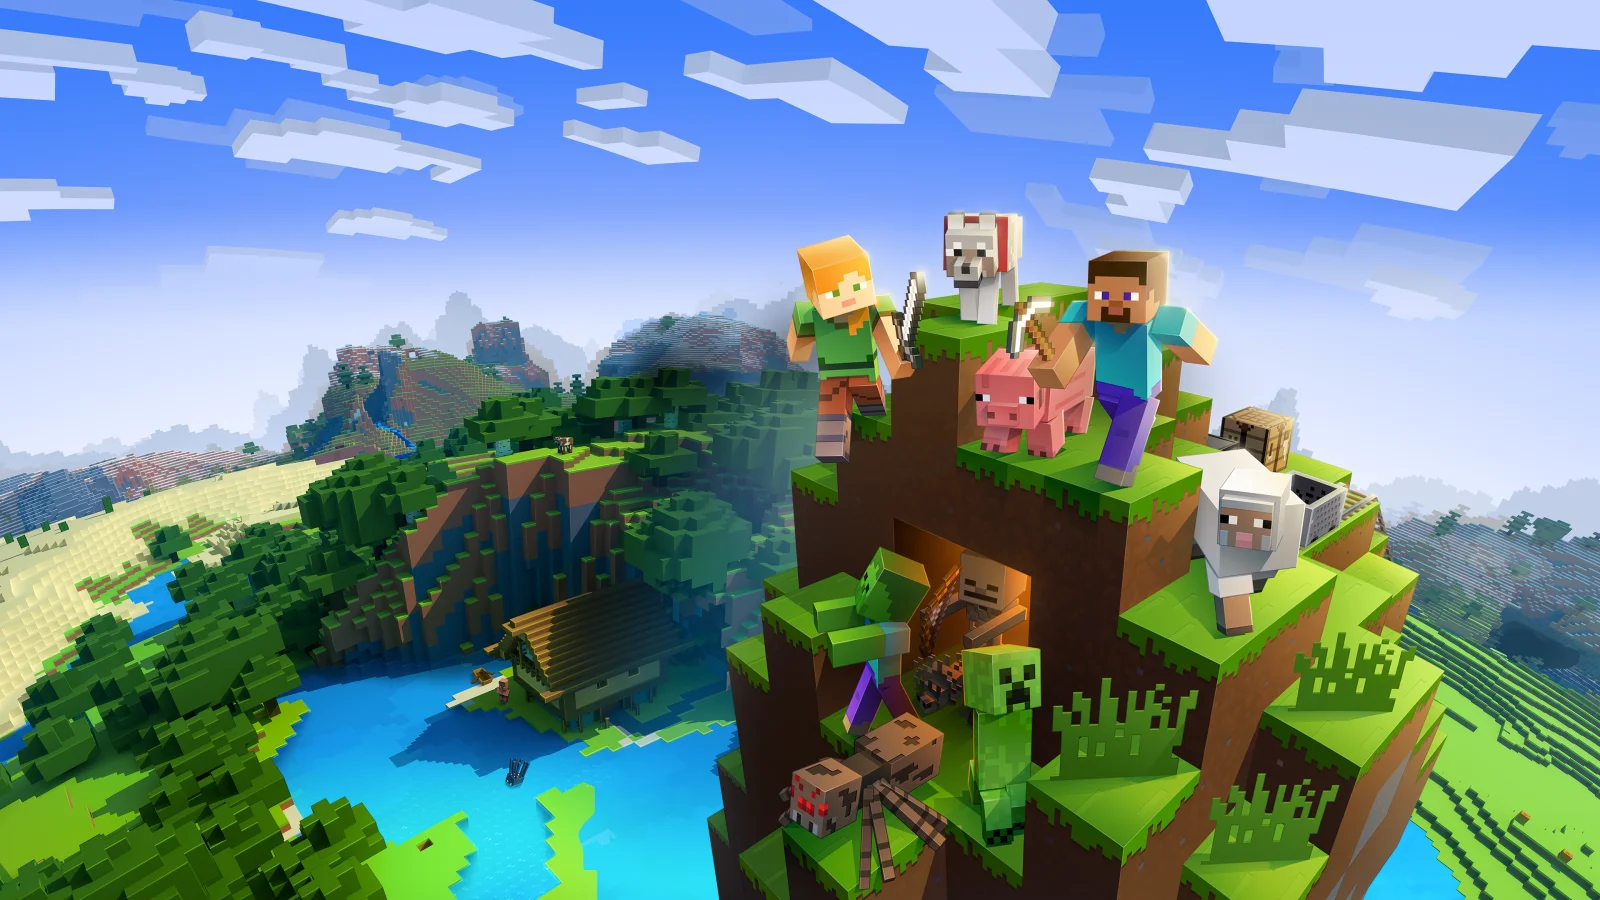 新一期的 Minecraft Live 直播活动将于10月16日举办